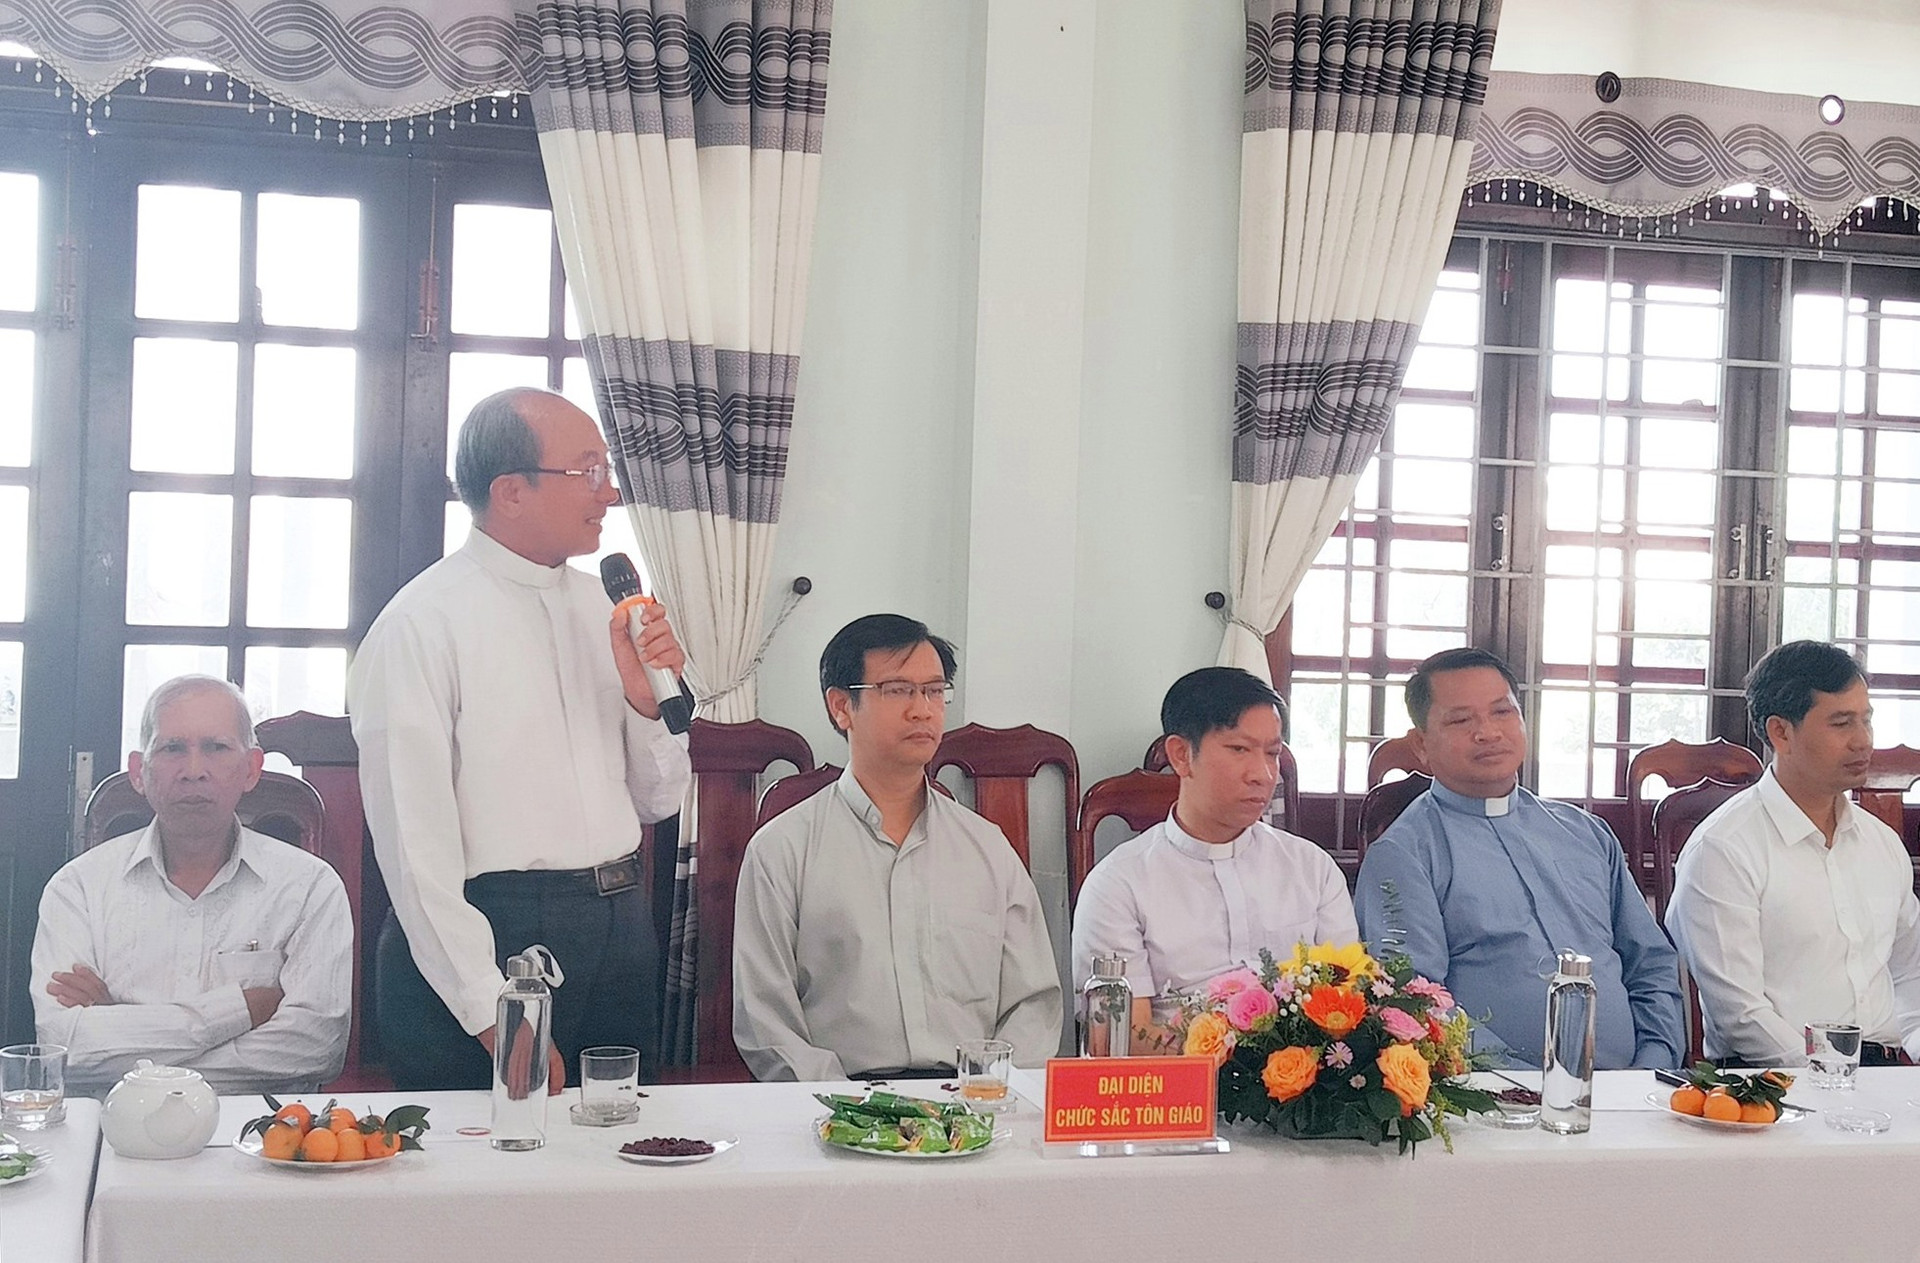 Các chức sắc, chức việc cảm ơn sự quan tâm của lãnh đạo huyện Thăng Bình và khẳng định sẽ cùng đồng hành với sự phát triển của huyện. Ảnh: T.N